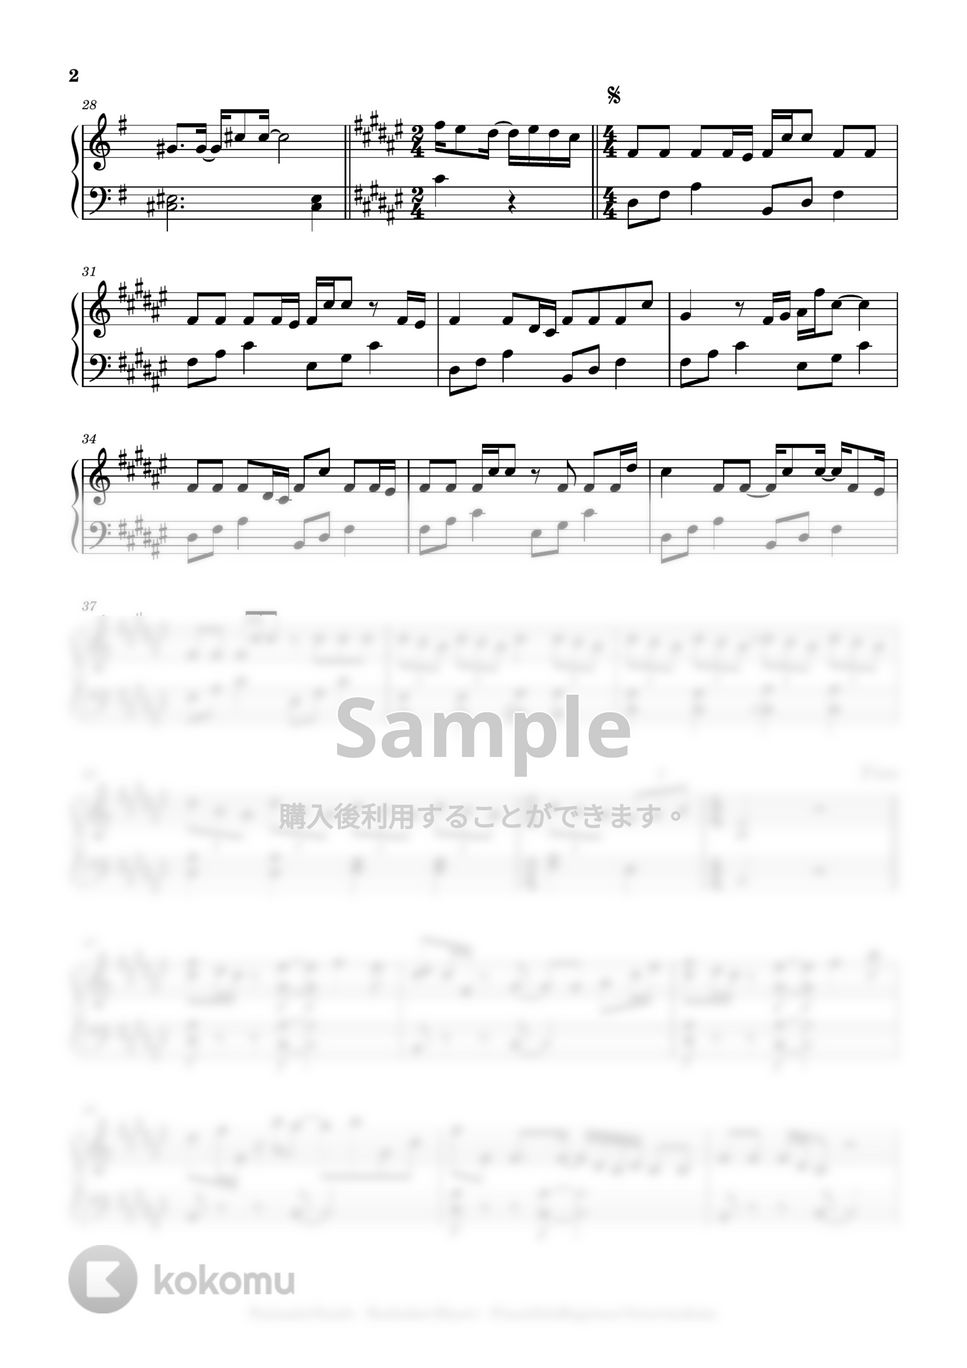 FantasticYouth - Koshaberi Biyori (beginner to intermediate, piano) by Mopianic